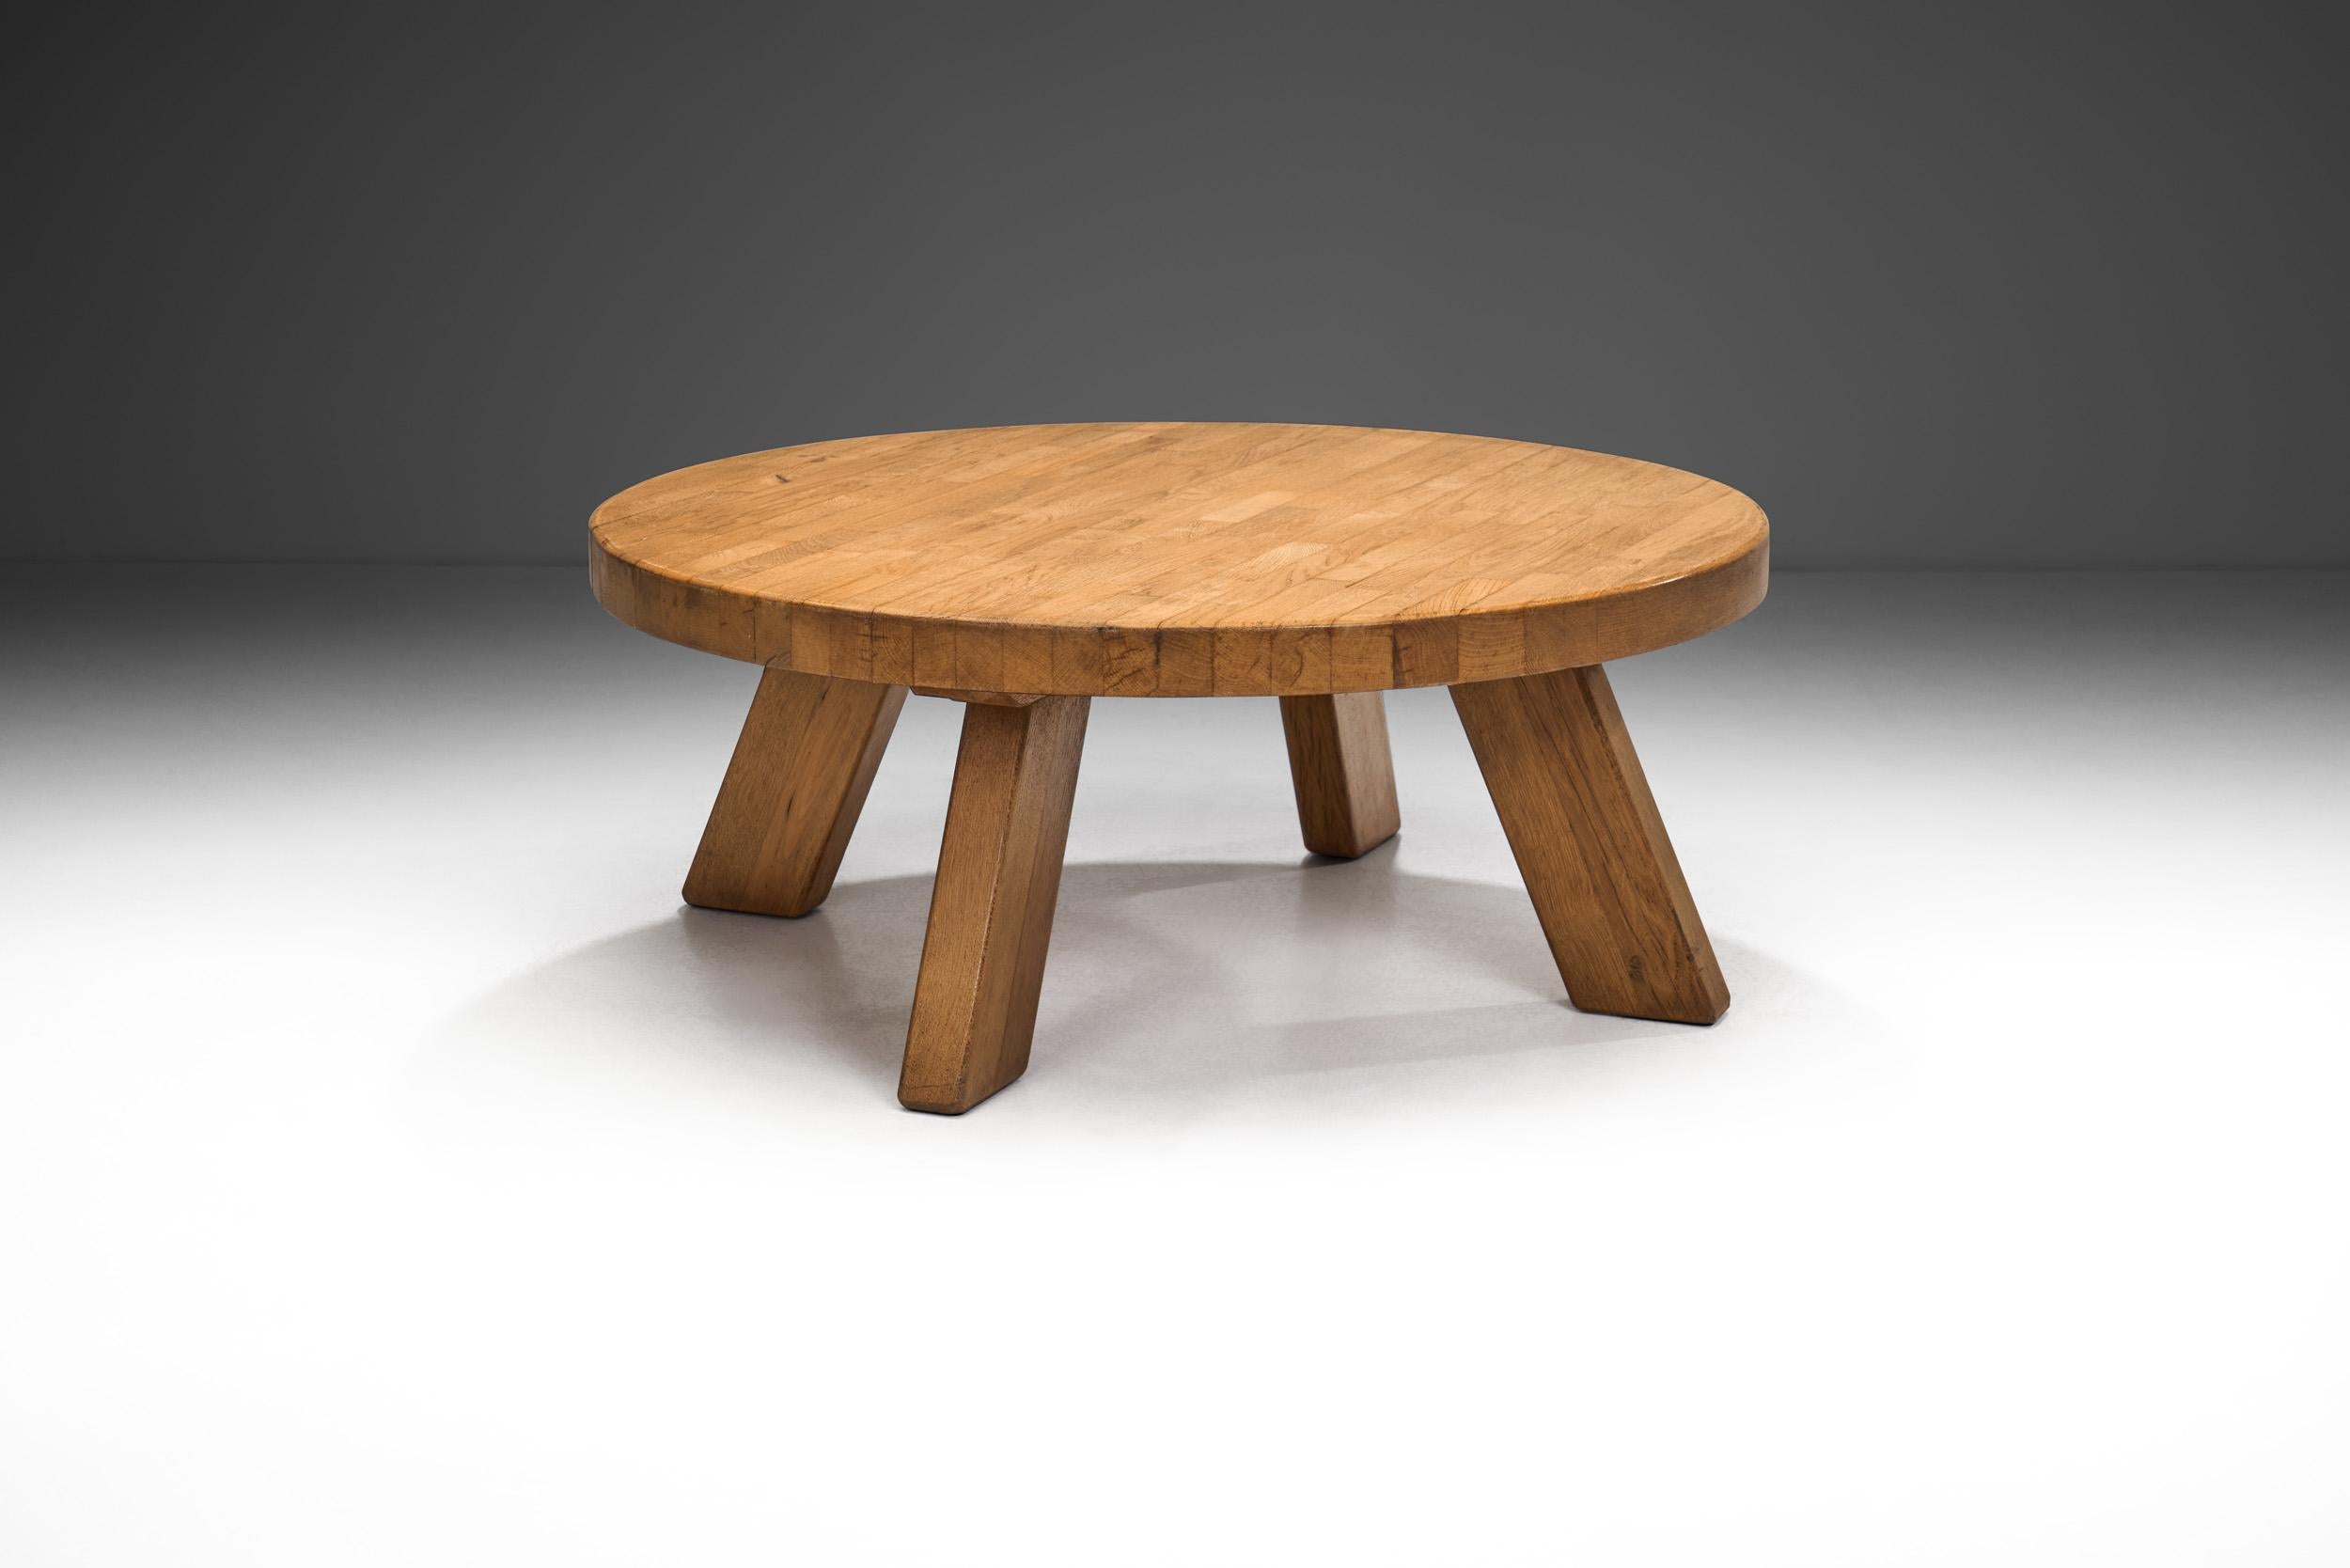 En Europe, et donc dans le design hollandais du milieu du siècle, l'accent a été mis très tôt sur le bois, qui relie les objets quotidiens, tels que les meubles, à la nature. Cette table basse rustique en chêne massif illustre parfaitement ce